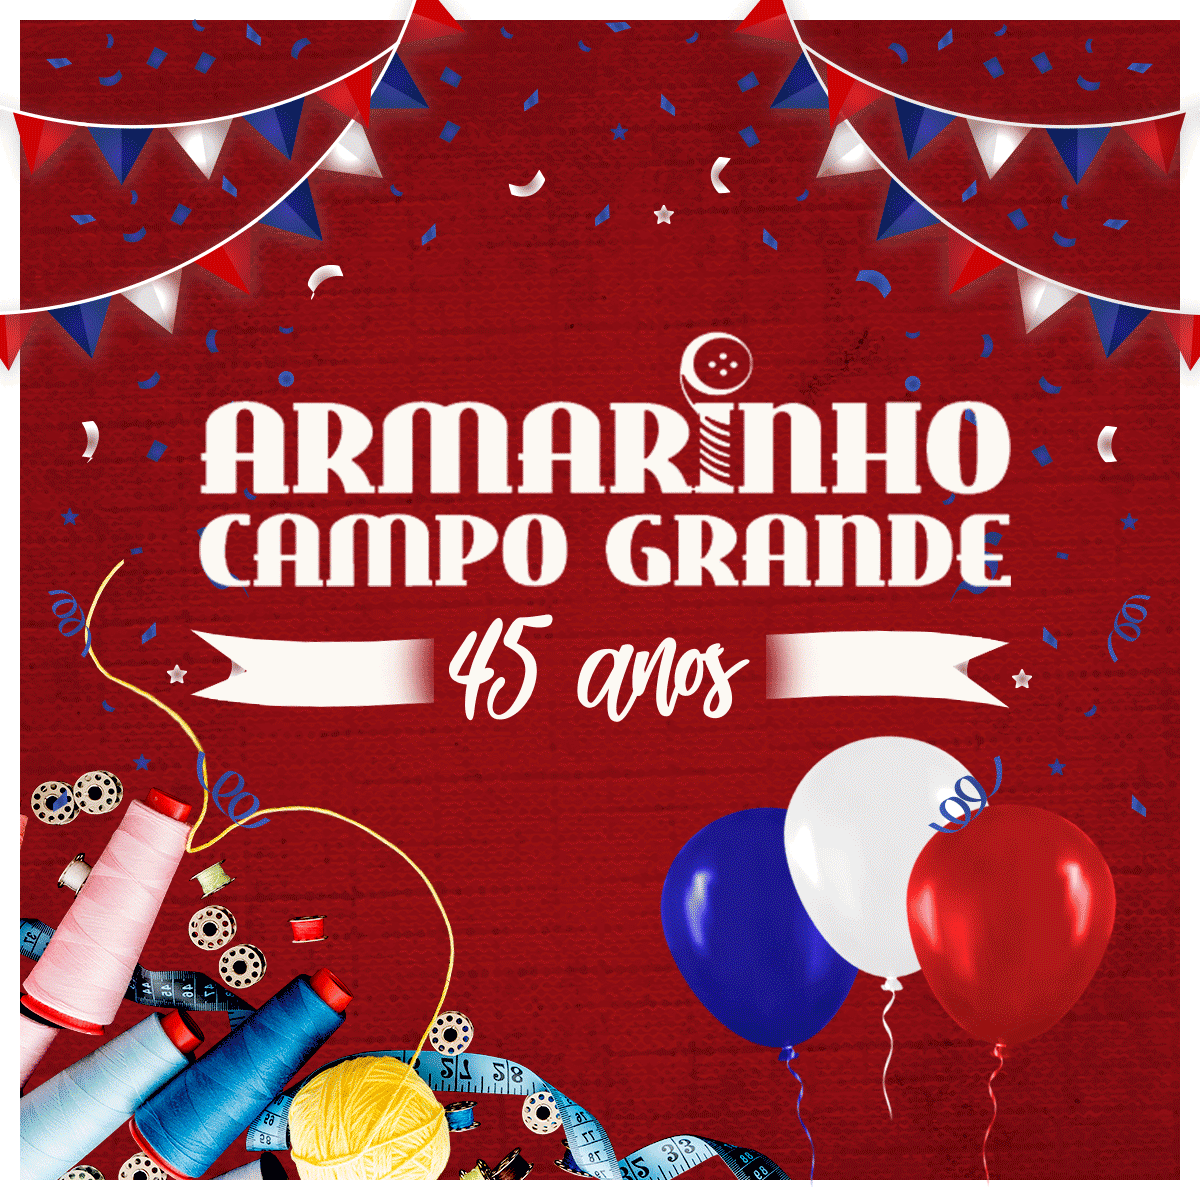 Armarinho Campo Grande